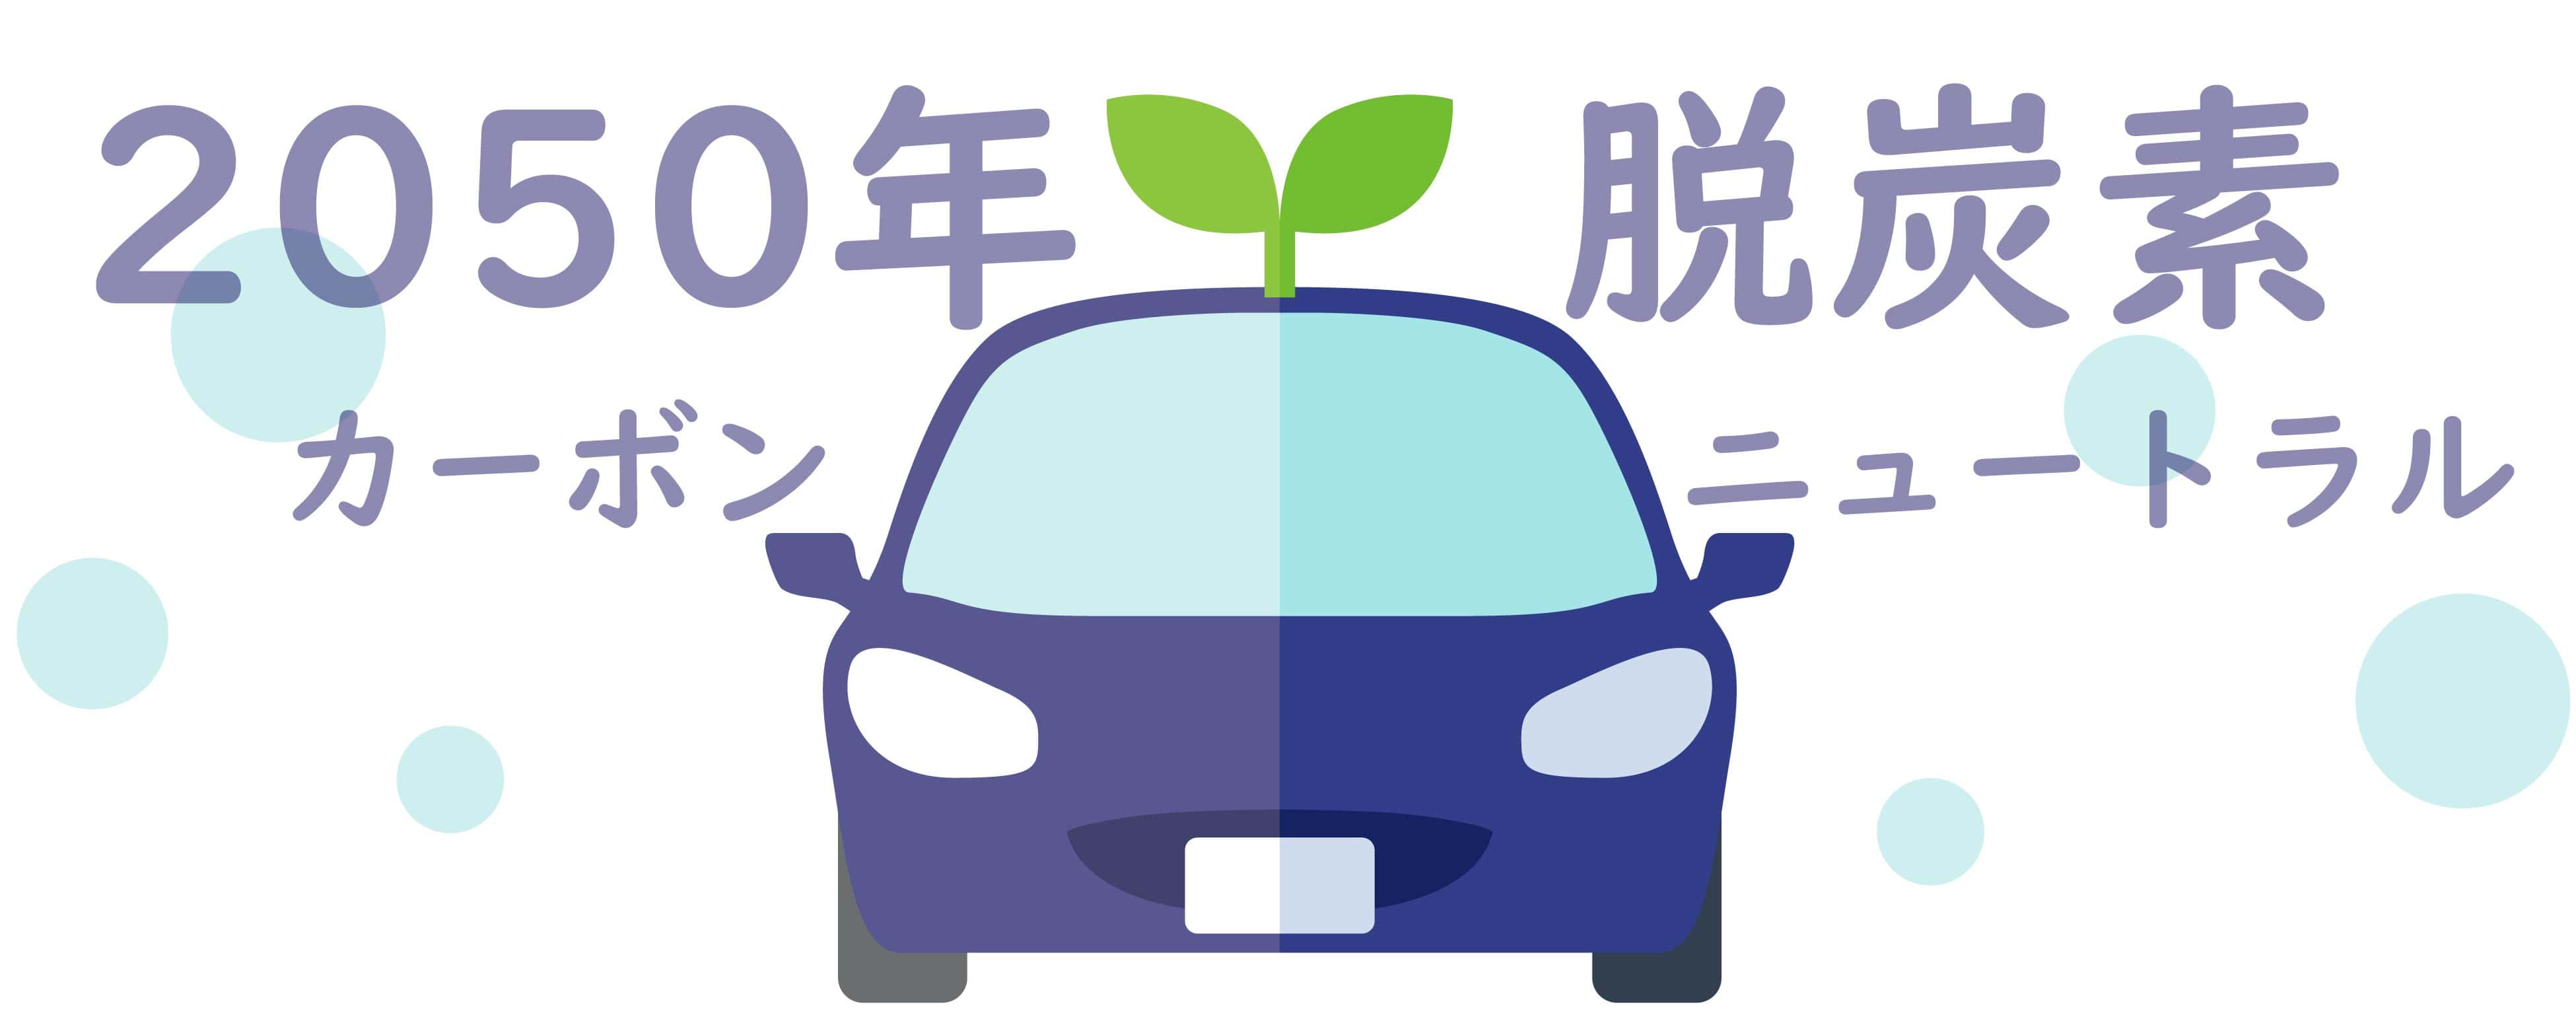 東京都は、自動車から排出される二酸化炭素の削減を図ることを目的としています。